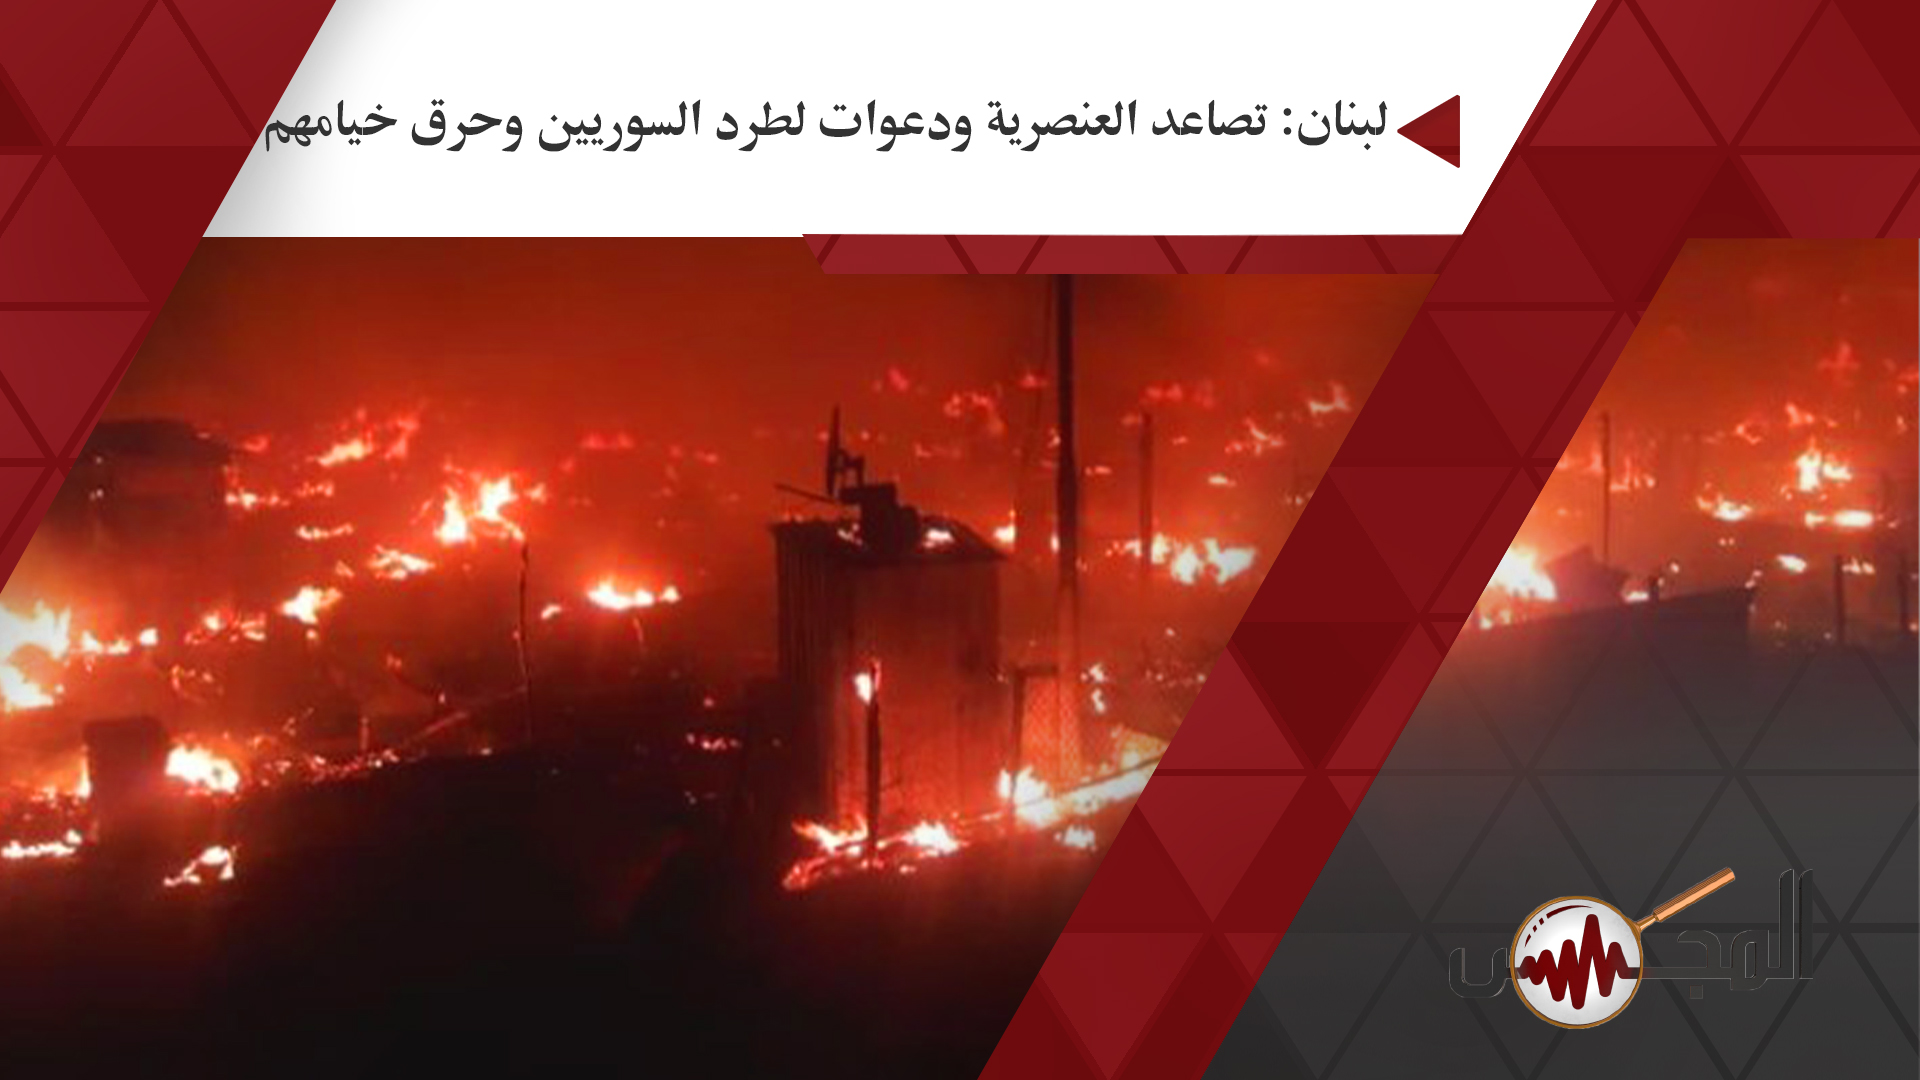 لبنان: تصاعد العنصرية ودعوات لطرد السوريين وحرق خيامهم